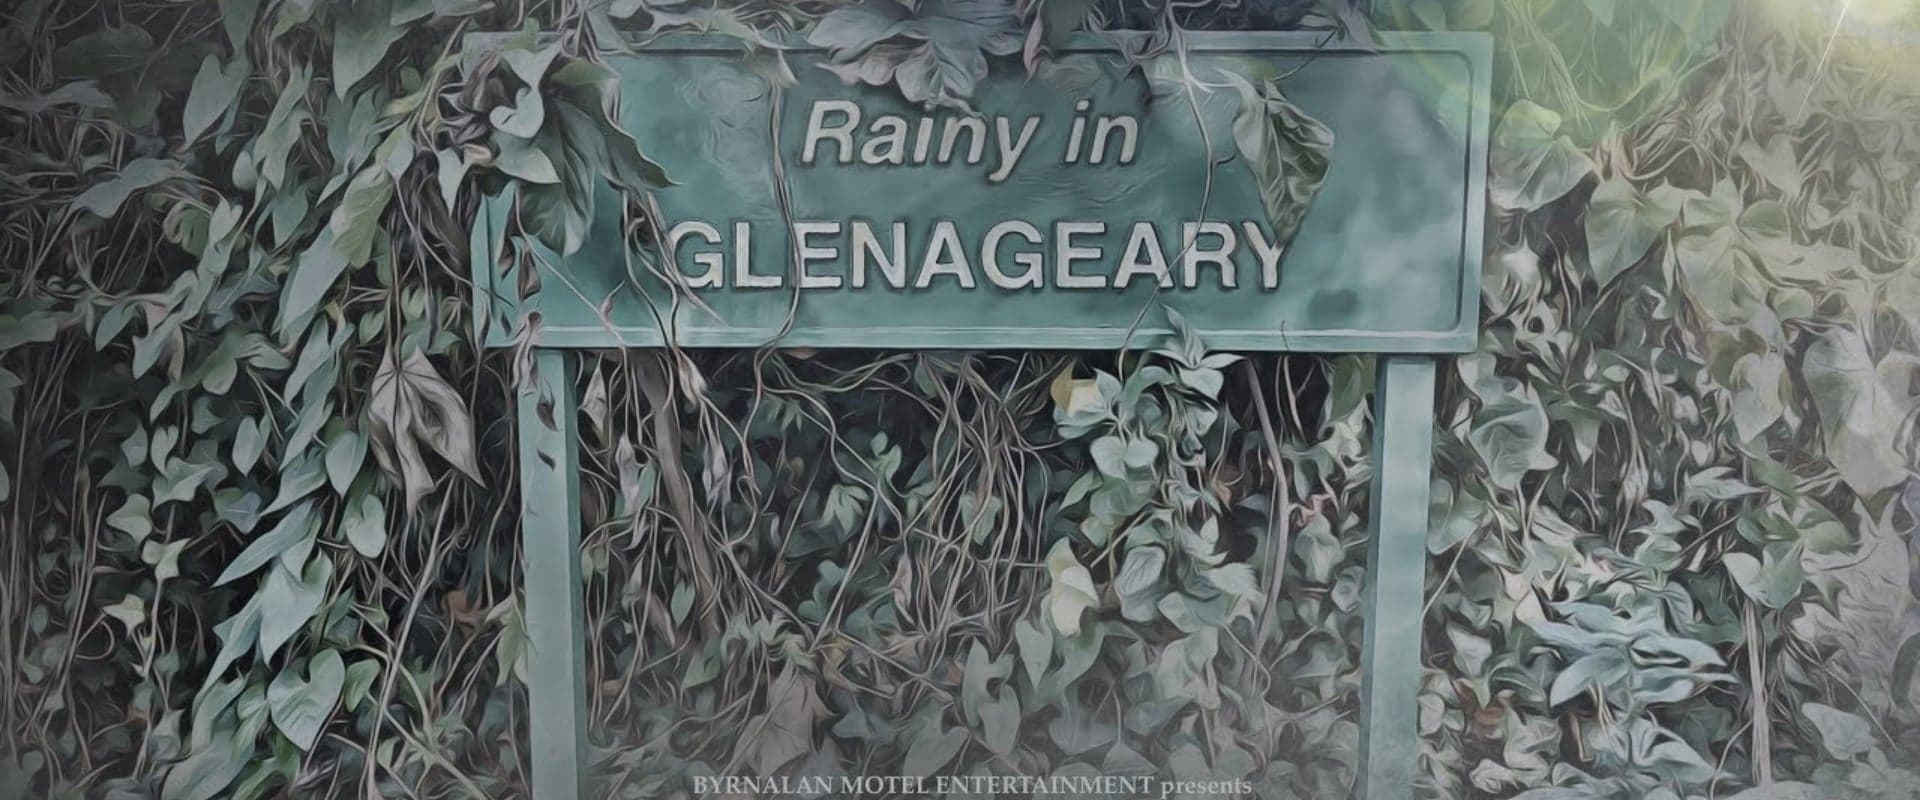 Rainy in Glenageary